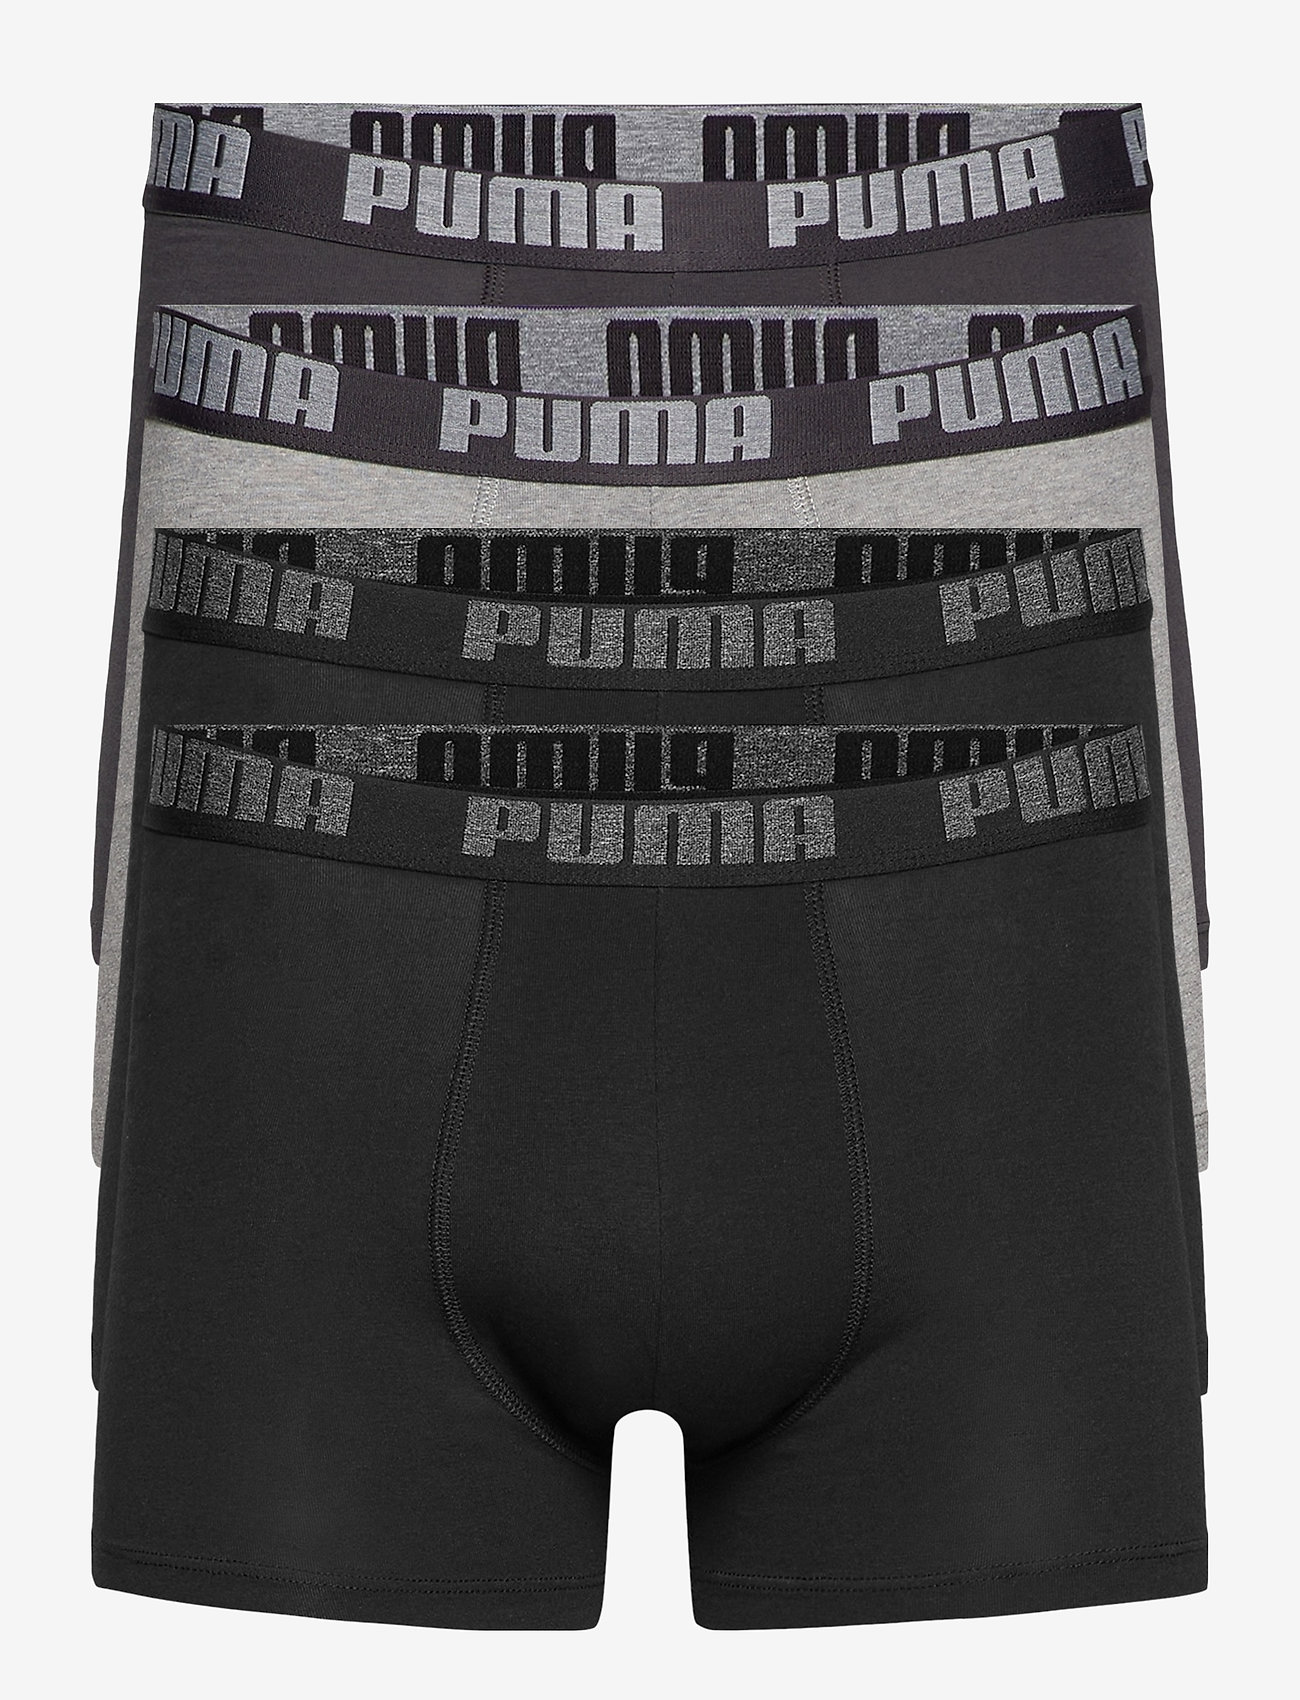 PUMA - PUMA BASIC BOXER 4P ECOM - boxer briefs - black / grey melange - 0